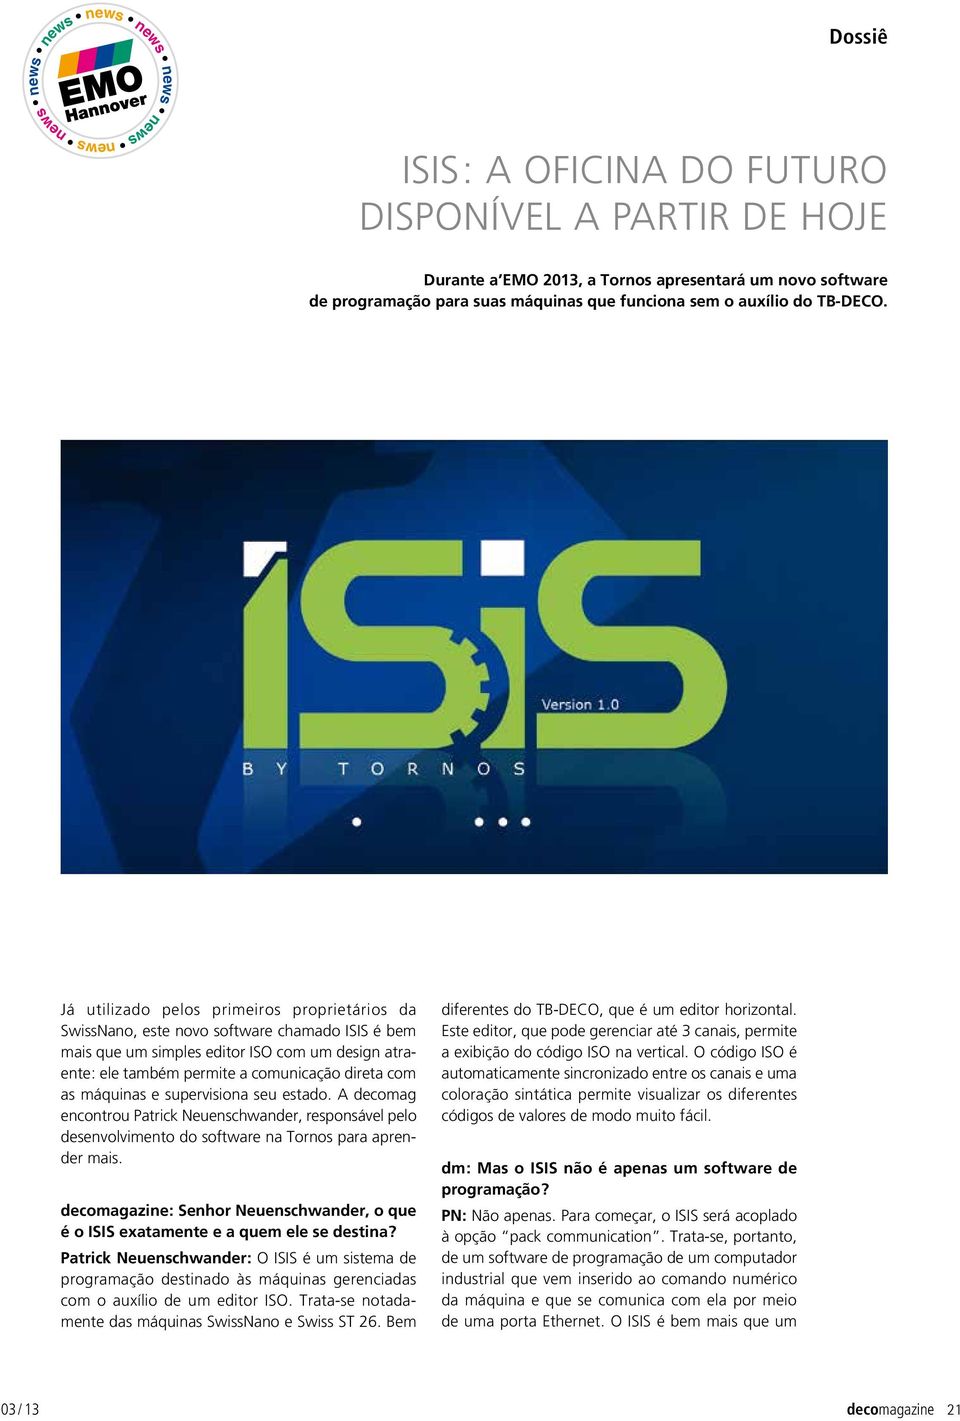 Já utilizado pelos primeiros proprietários da Swissnano, este novo software chamado ISIS é bem mais que um simples editor ISO com um design atraente : ele também permite a comunicação direta com as